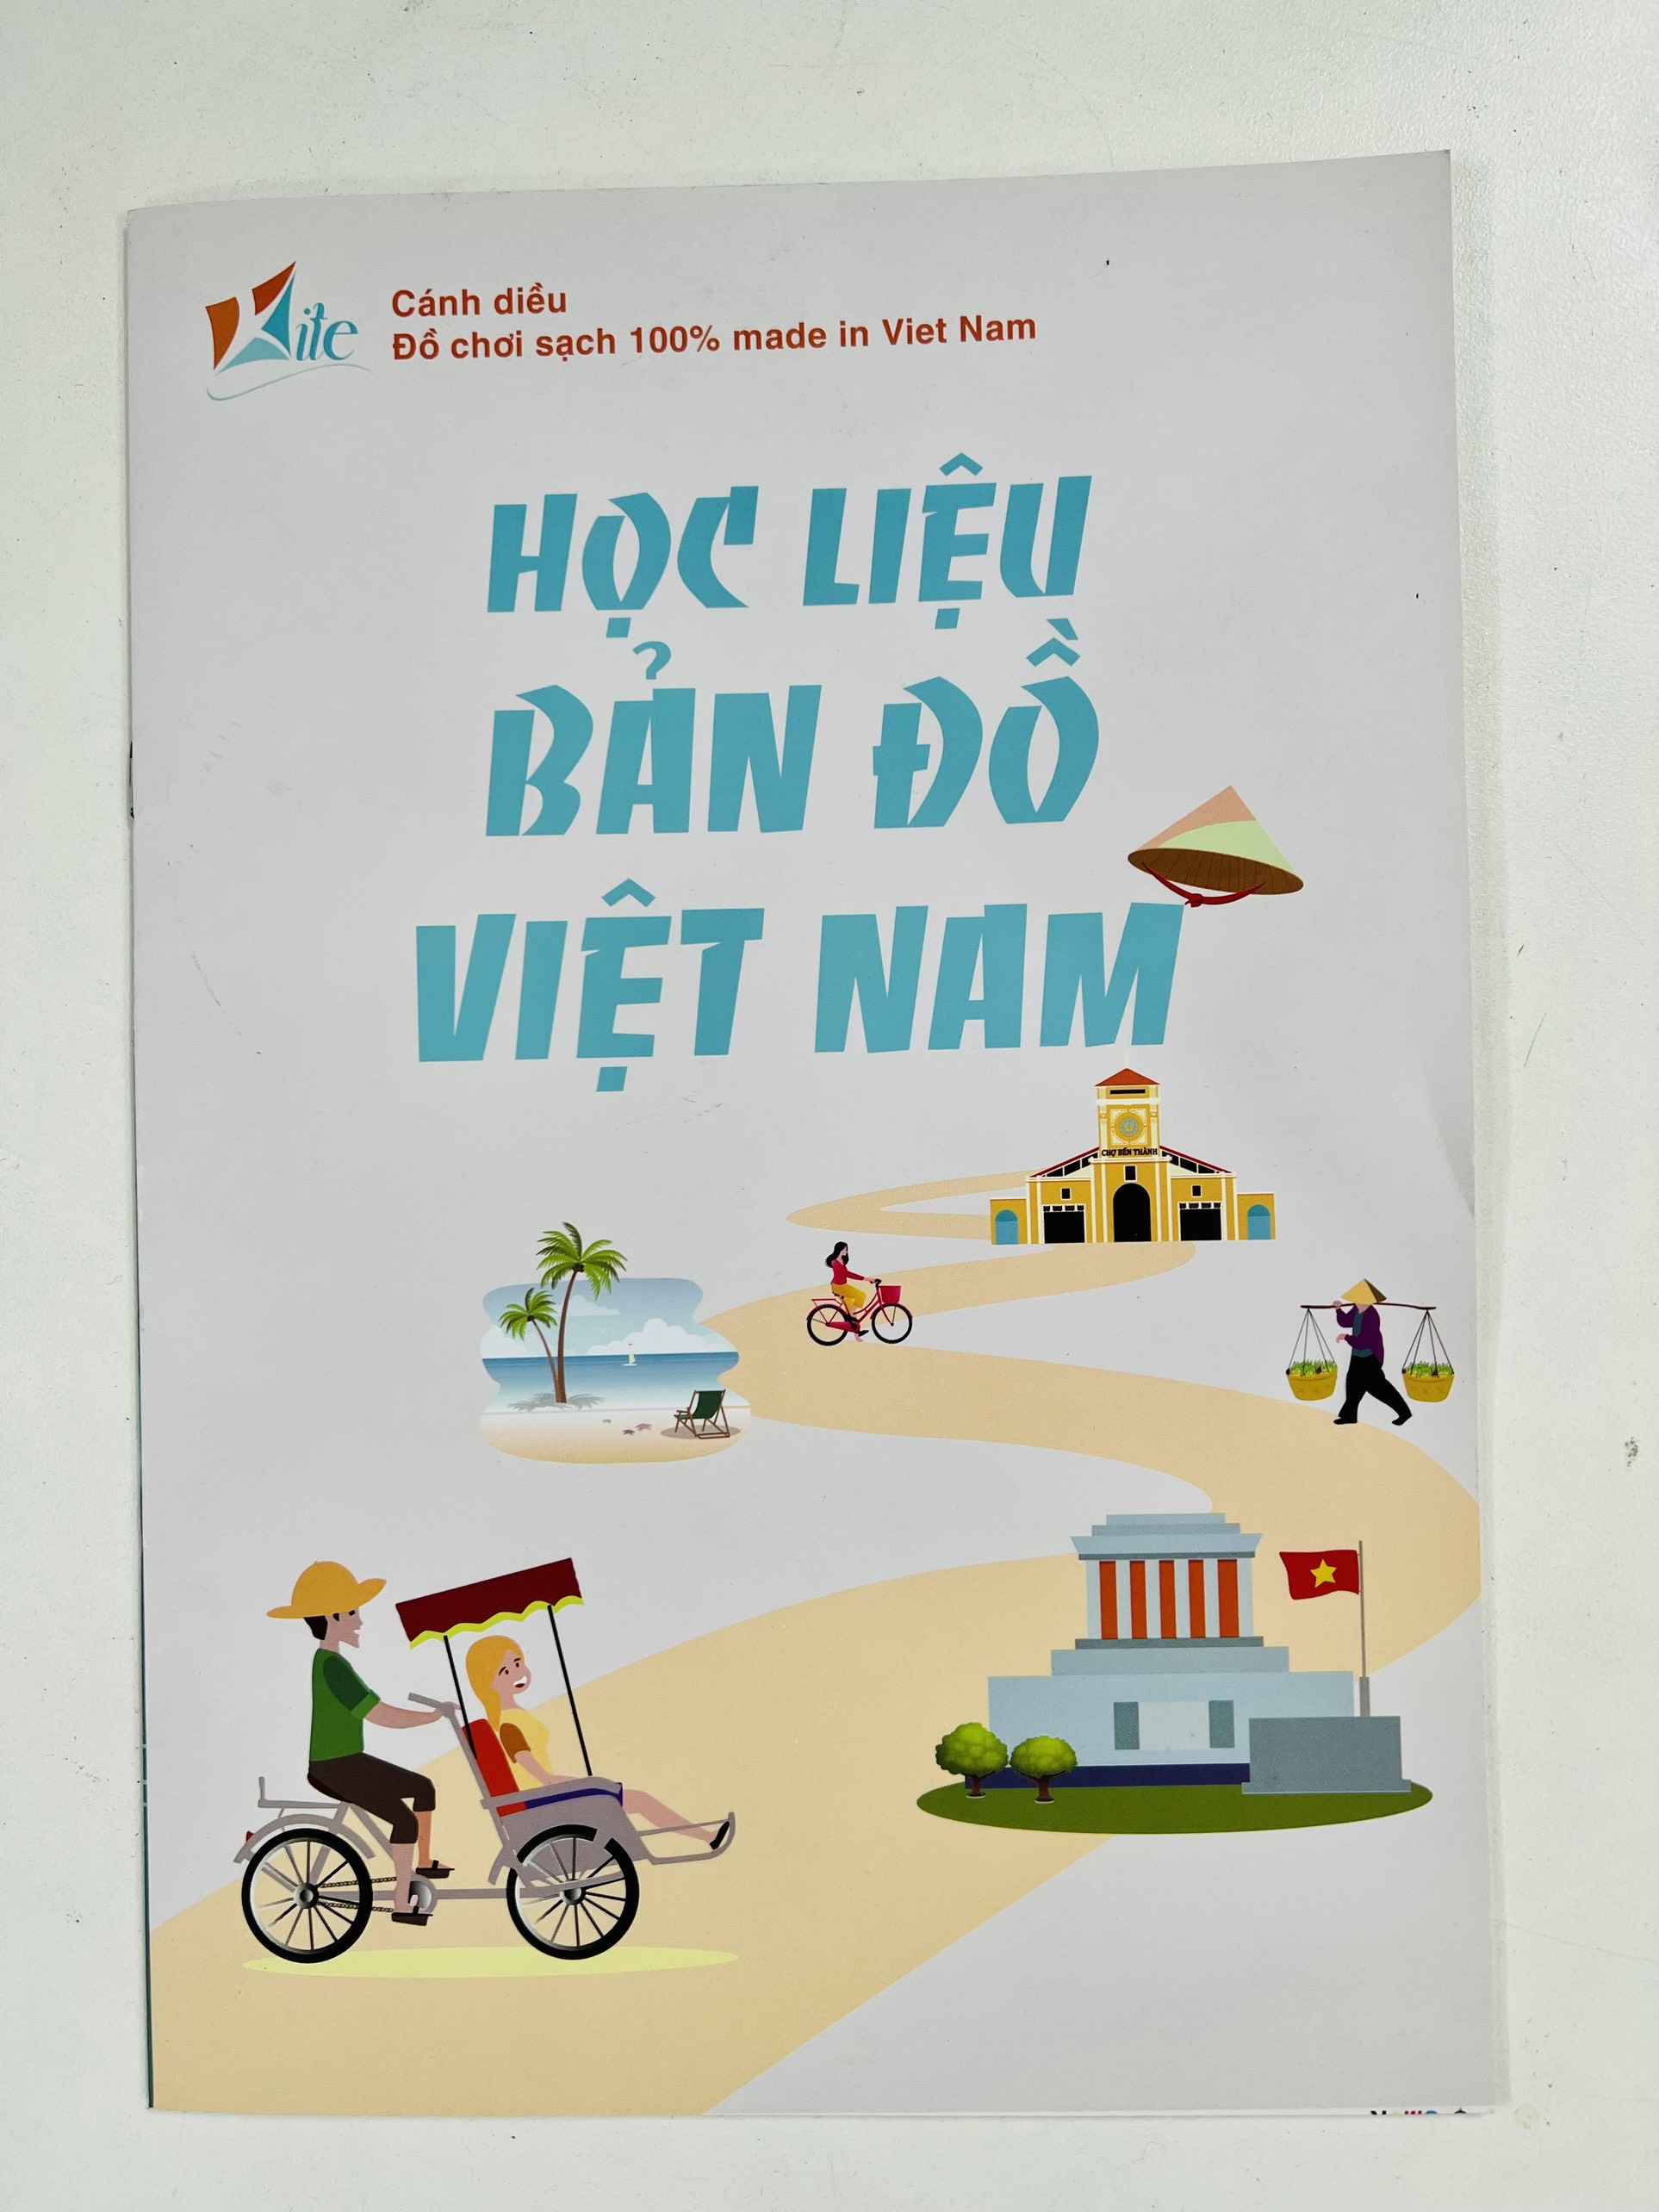 Bộ lắp ghép nam châm Bản Đồ Việt Nam – Học liệu, decor trang trí - Metis đồ chơi cho con